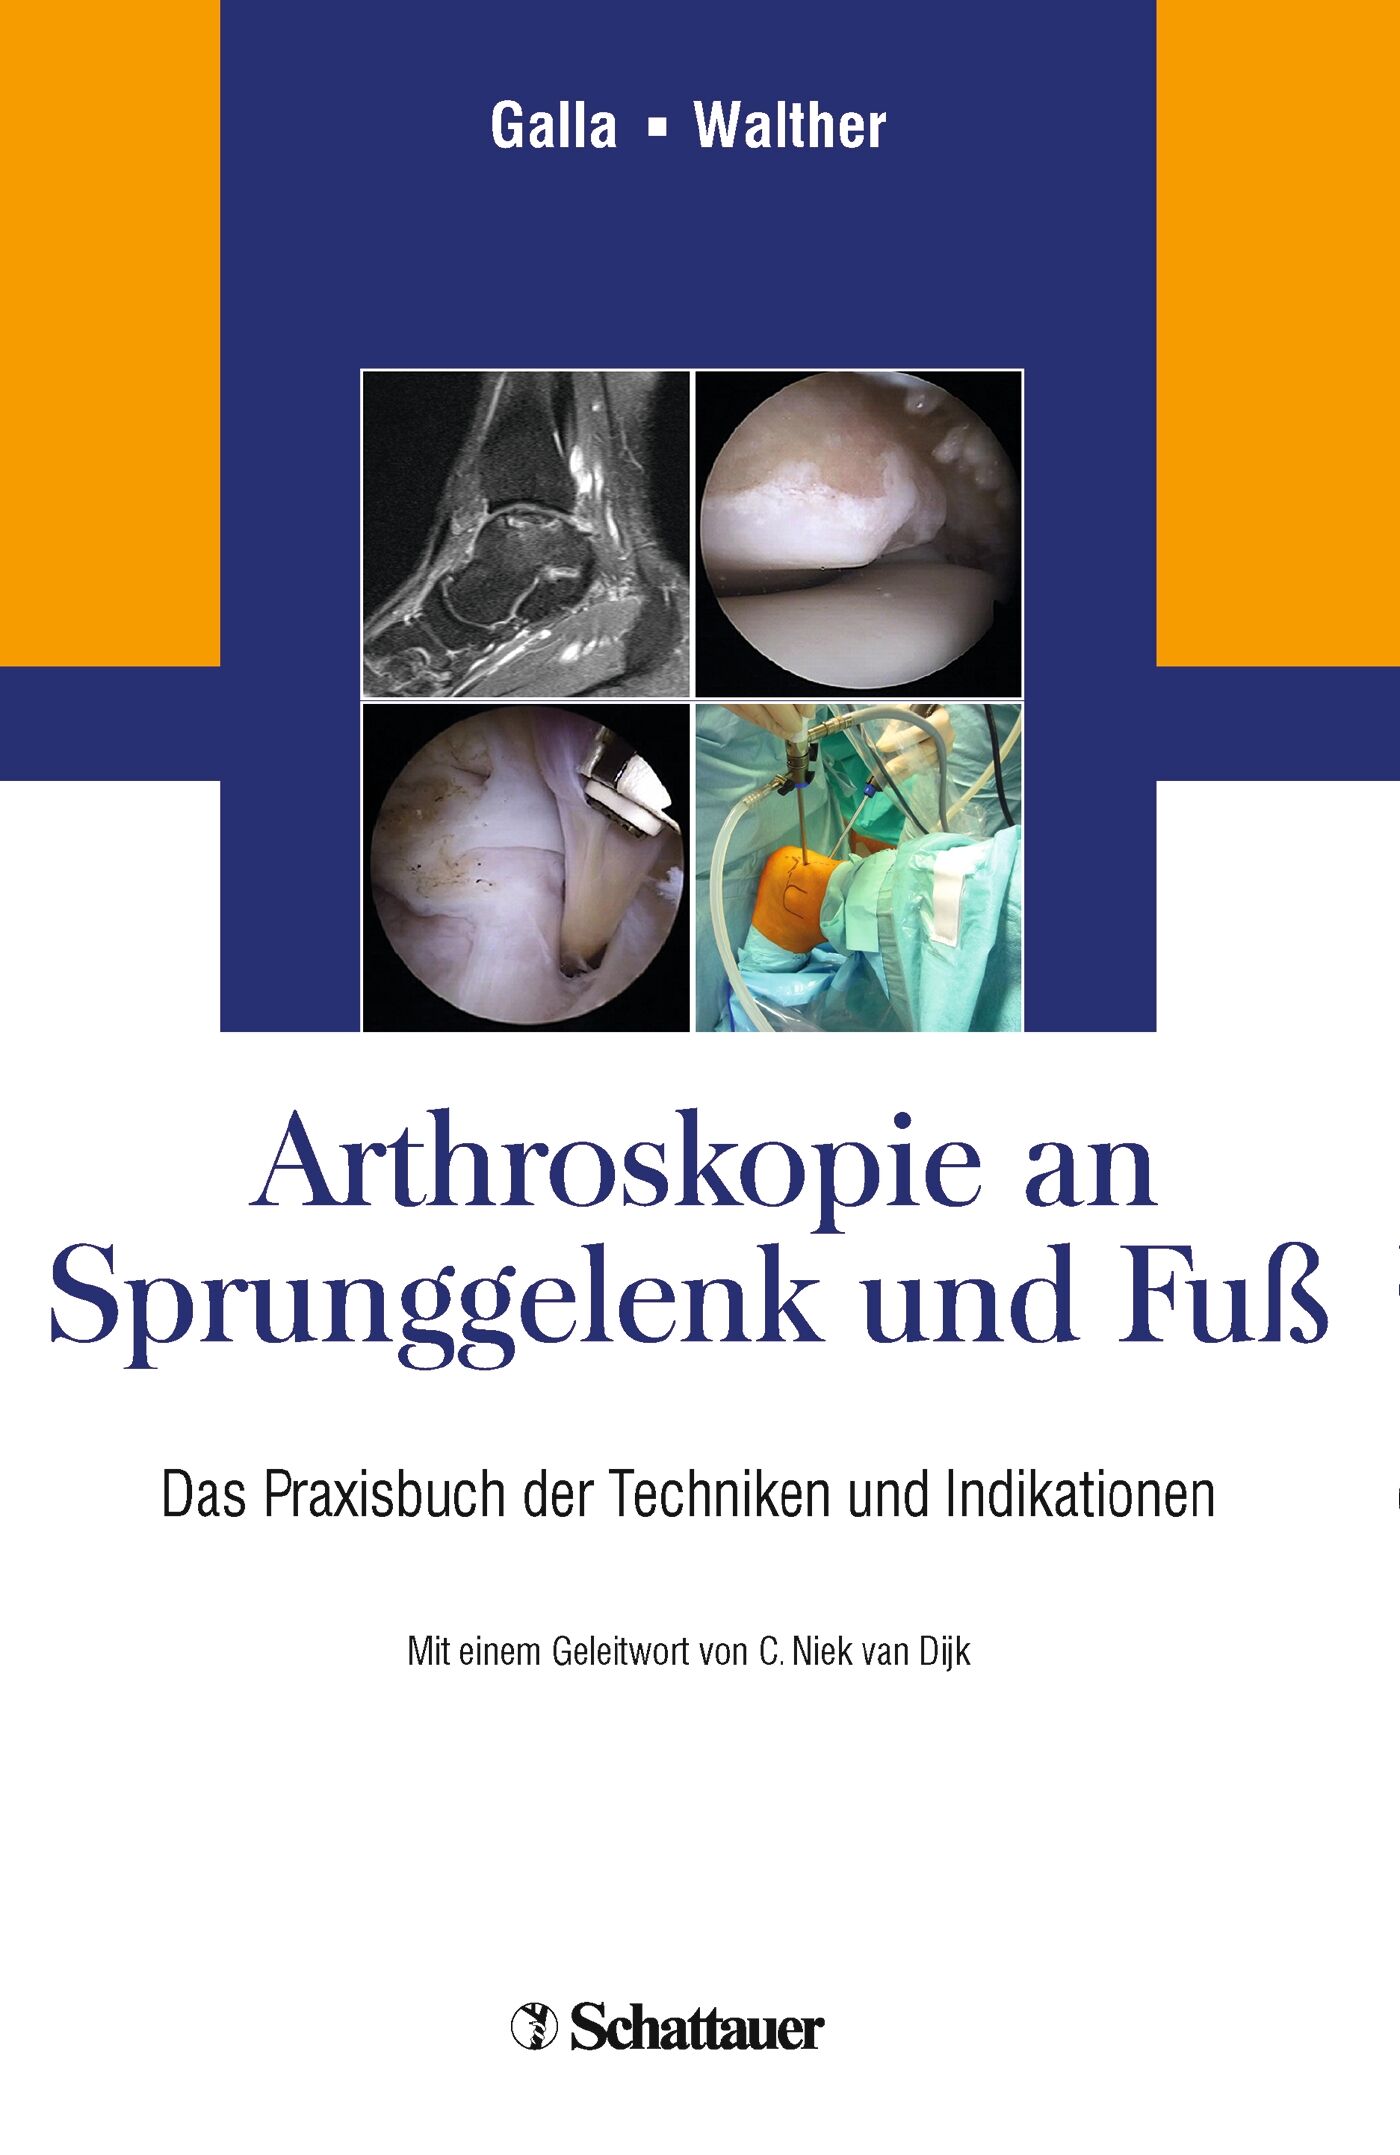 Arthroskopie an Sprunggelenk und Fuß, 9783794529674